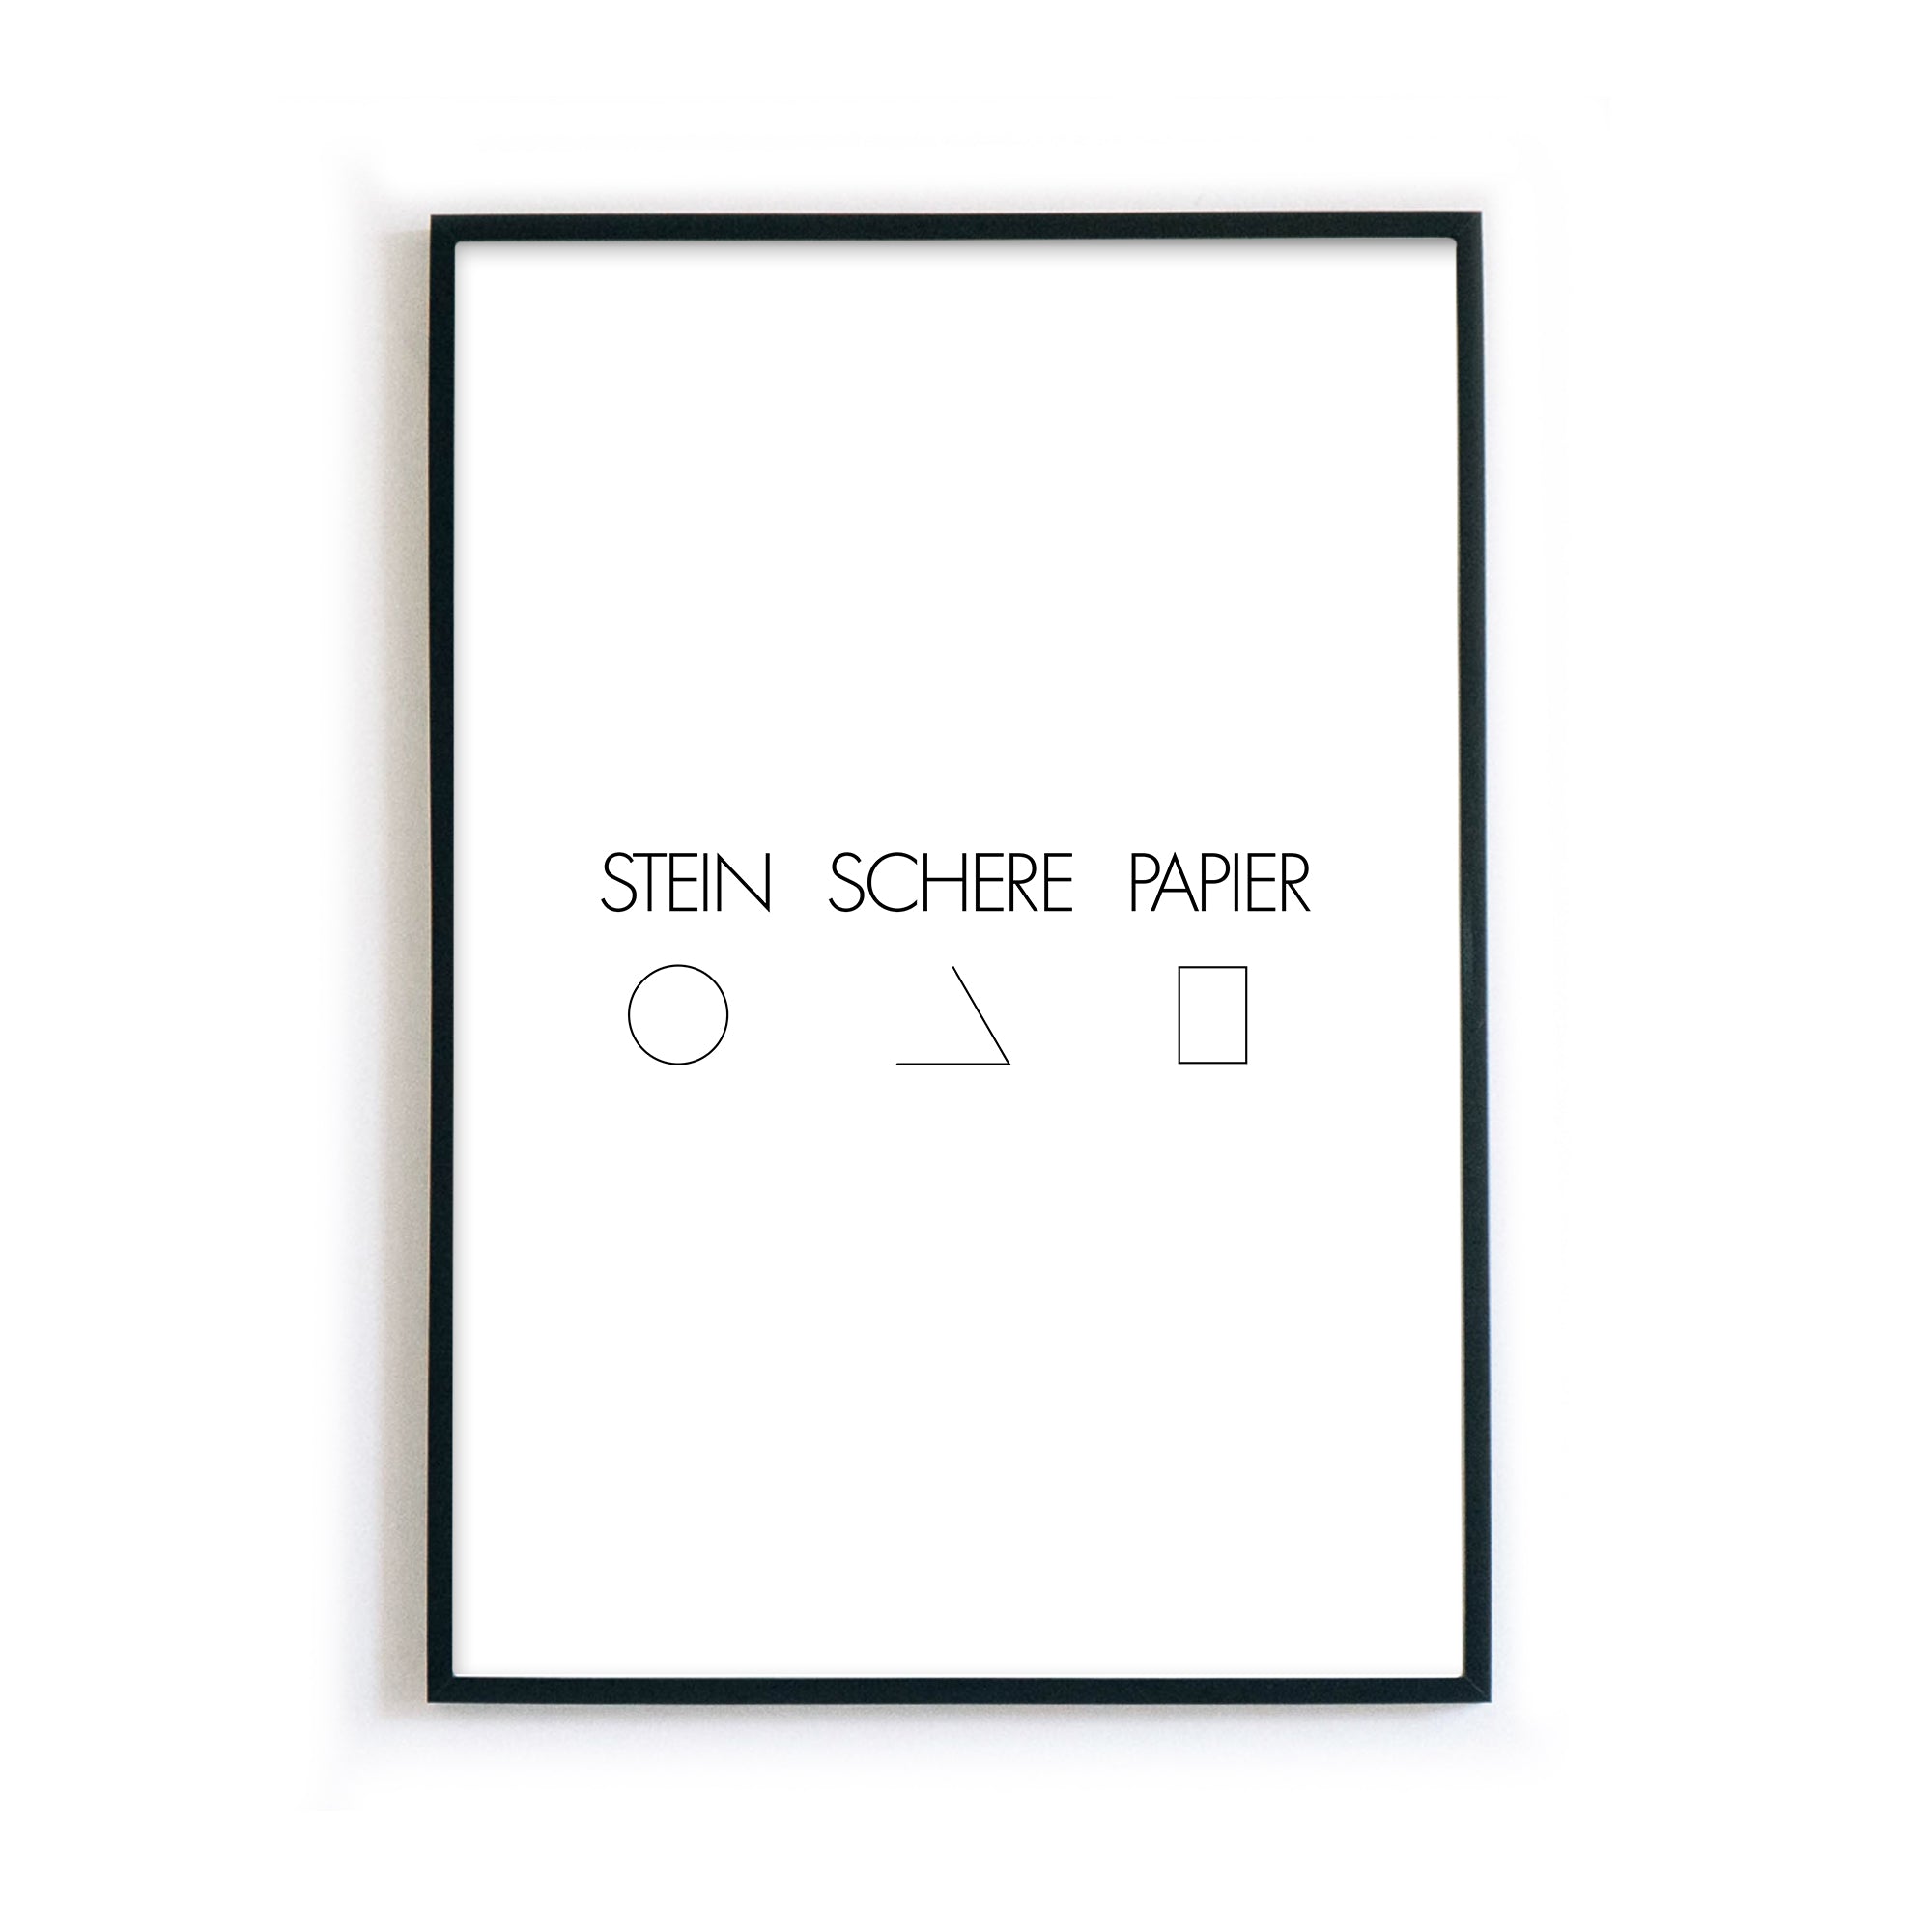 4one-pictures-poster-stein-schwere-papier-schwarz-weiss-typografie-quotes-bild-clean-minimalistisch-rahmen.jpg